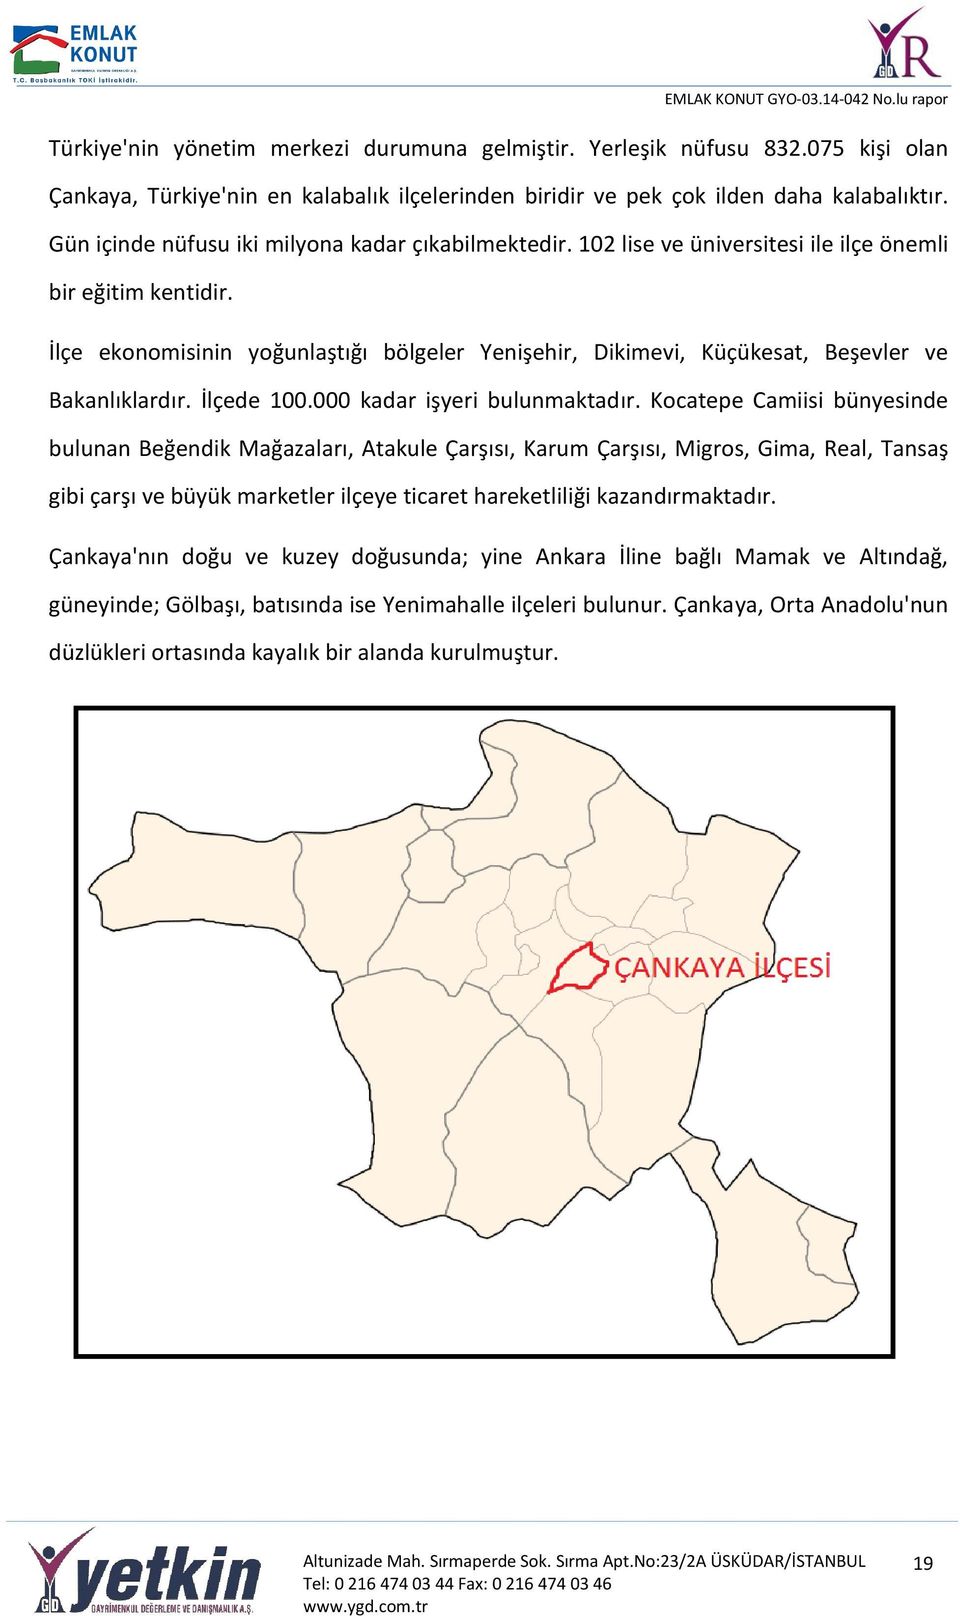 İlçe ekonomisinin yoğunlaştığı bölgeler Yenişehir, Dikimevi, Küçükesat, Beşevler ve Bakanlıklardır. İlçede 100.000 kadar işyeri bulunmaktadır.